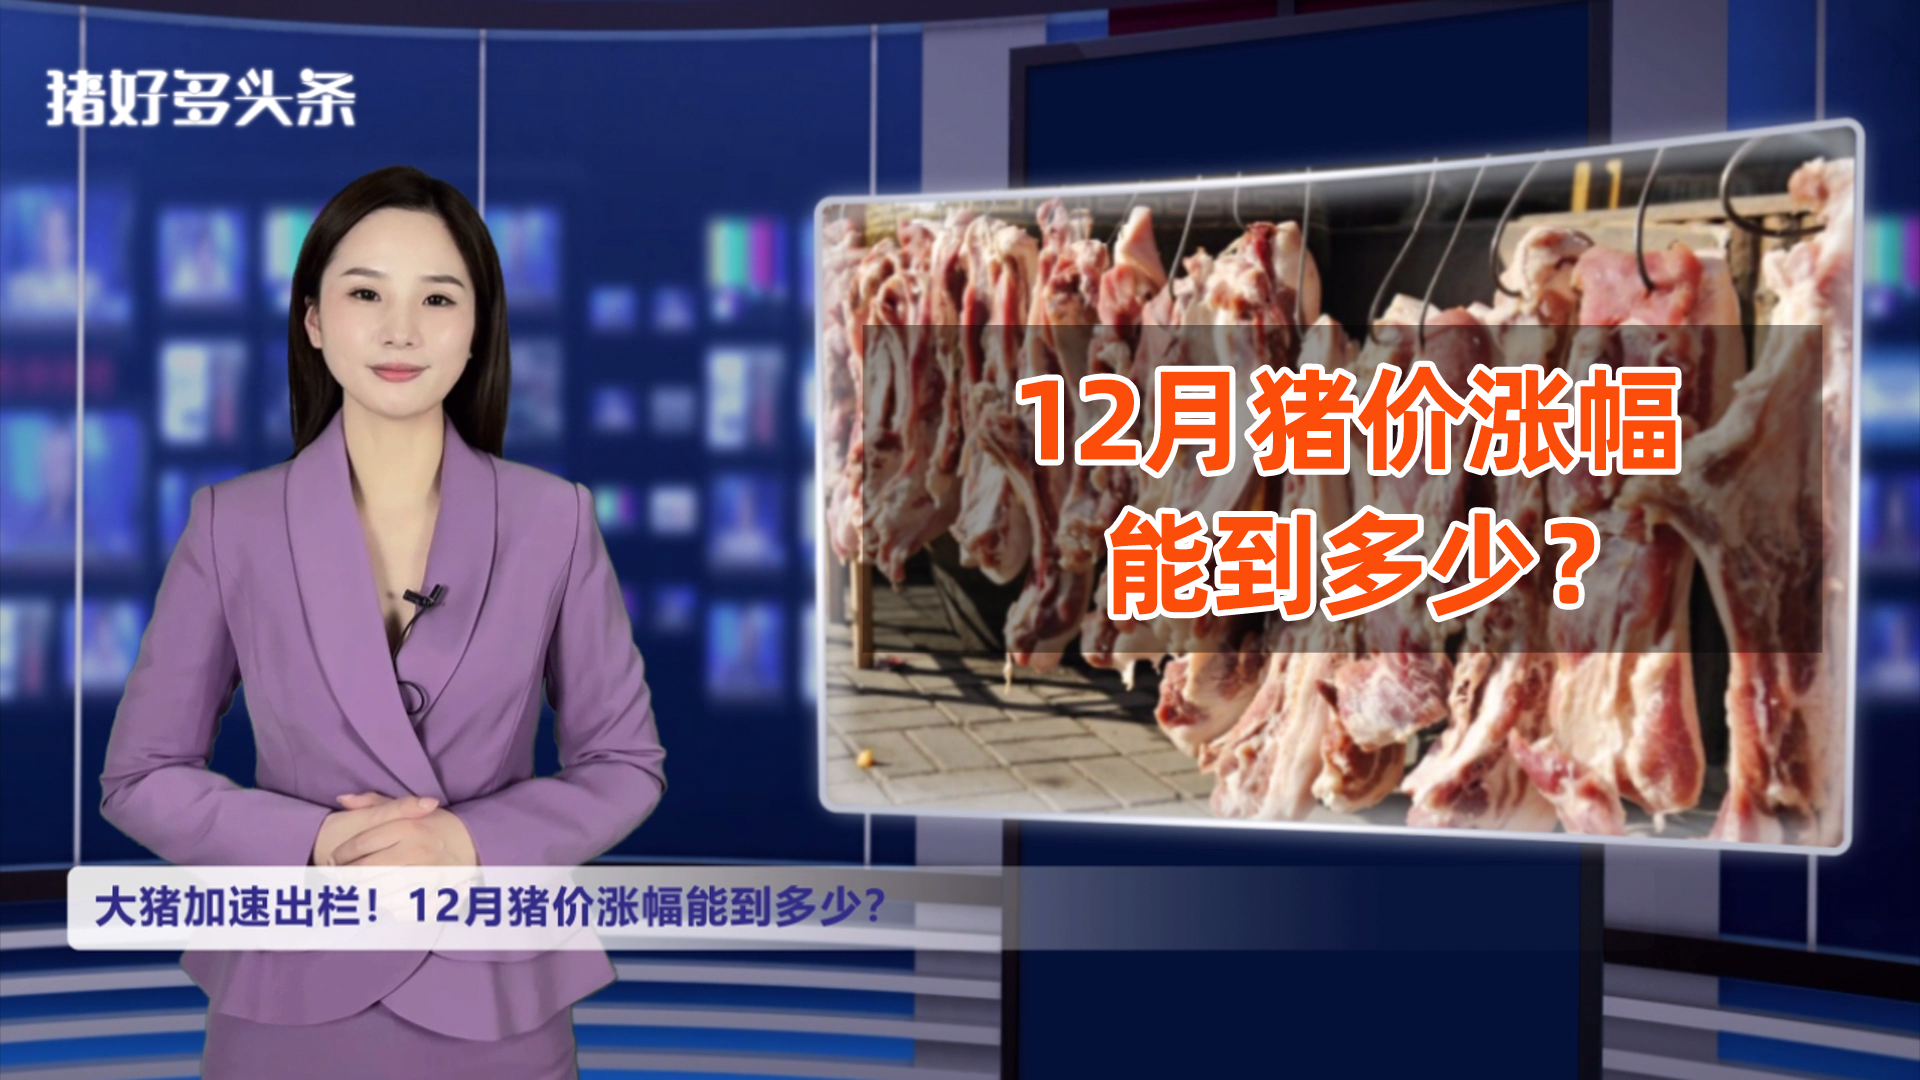 肥猪供应增多！腌腊陆续启动！12月猪价涨幅能到多少？